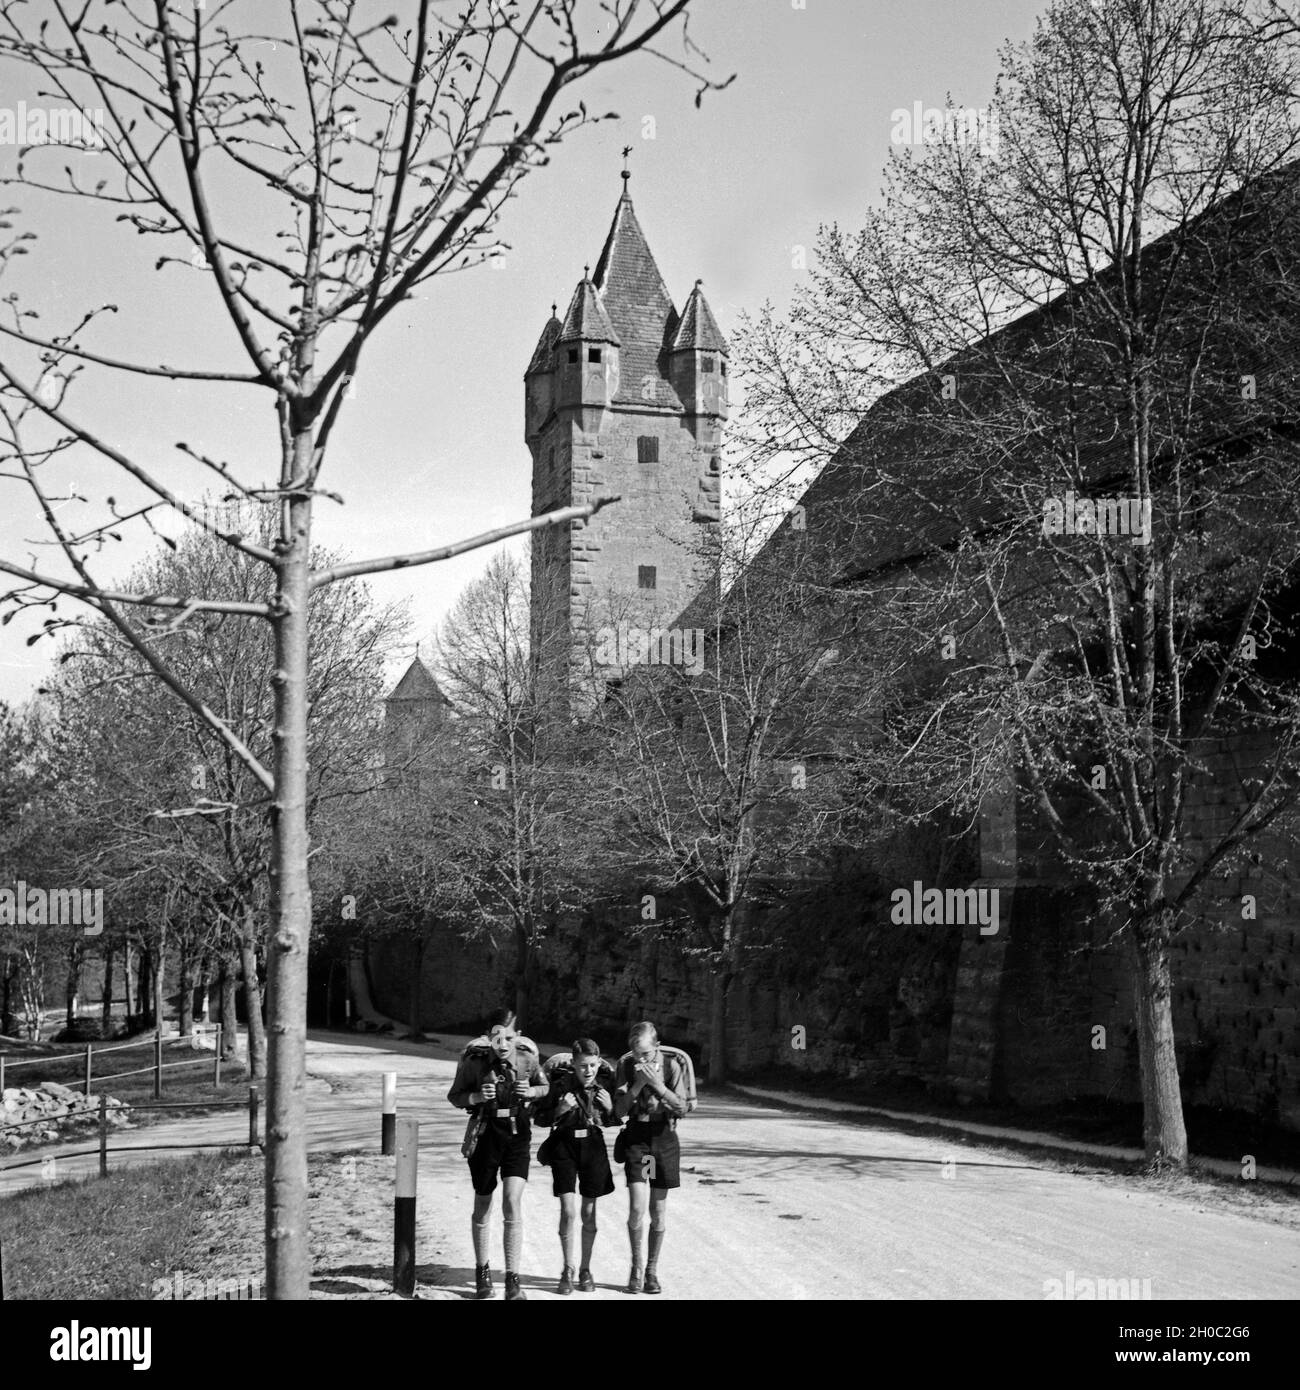 Drei Hitlerjungen auf einer Wandertour durch Deutschland an einer Stadtmauer mit Stadtturm, 1930er Jahre. Three Hitler youths wandering through Germany near a city wall and watchout. 1930s. Stock Photo